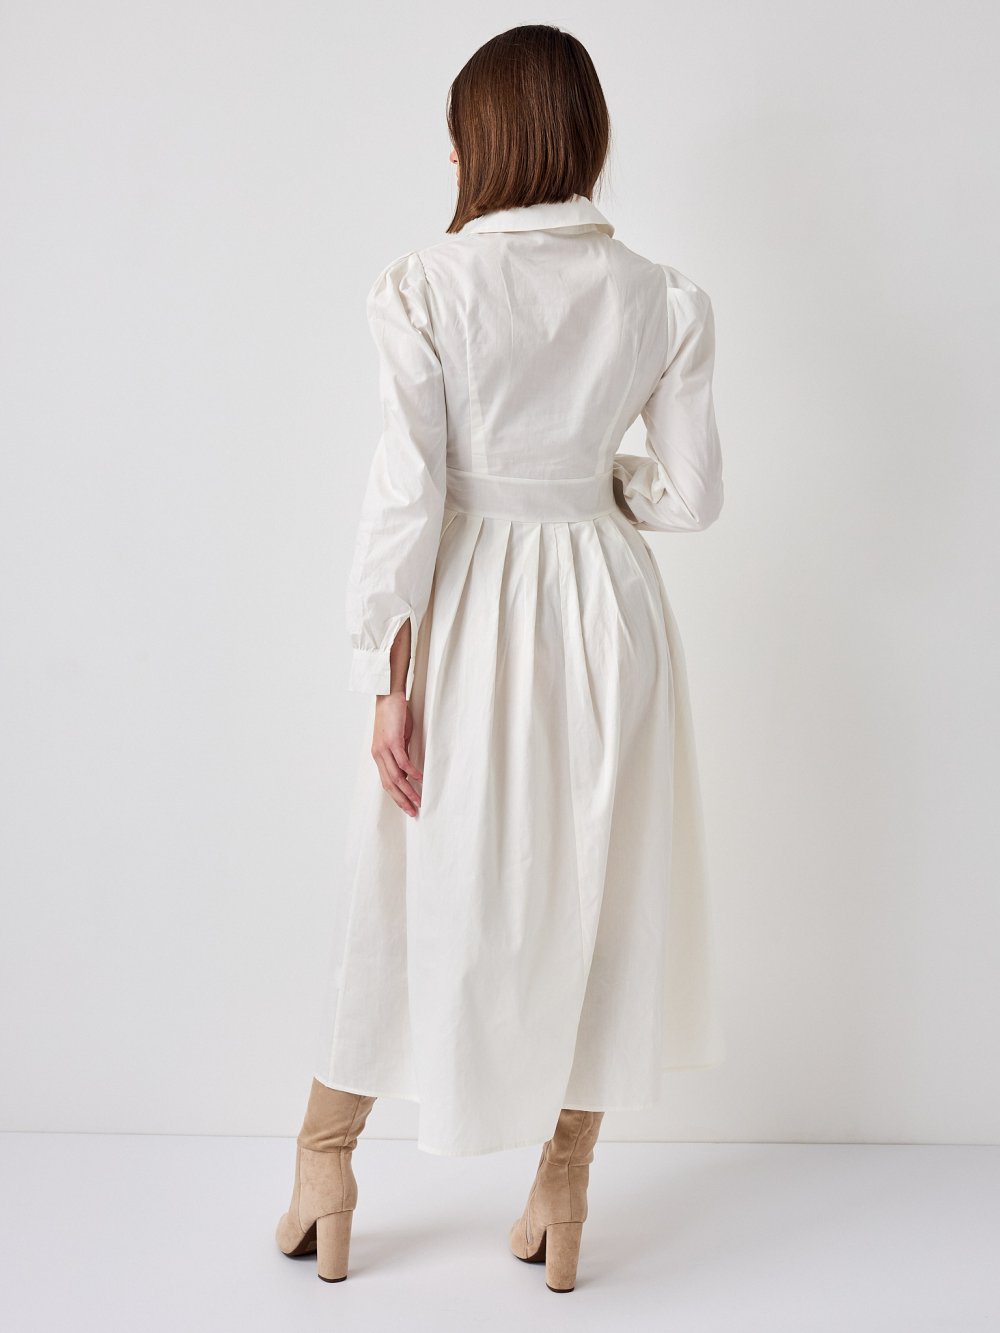 Biele šaty Lina